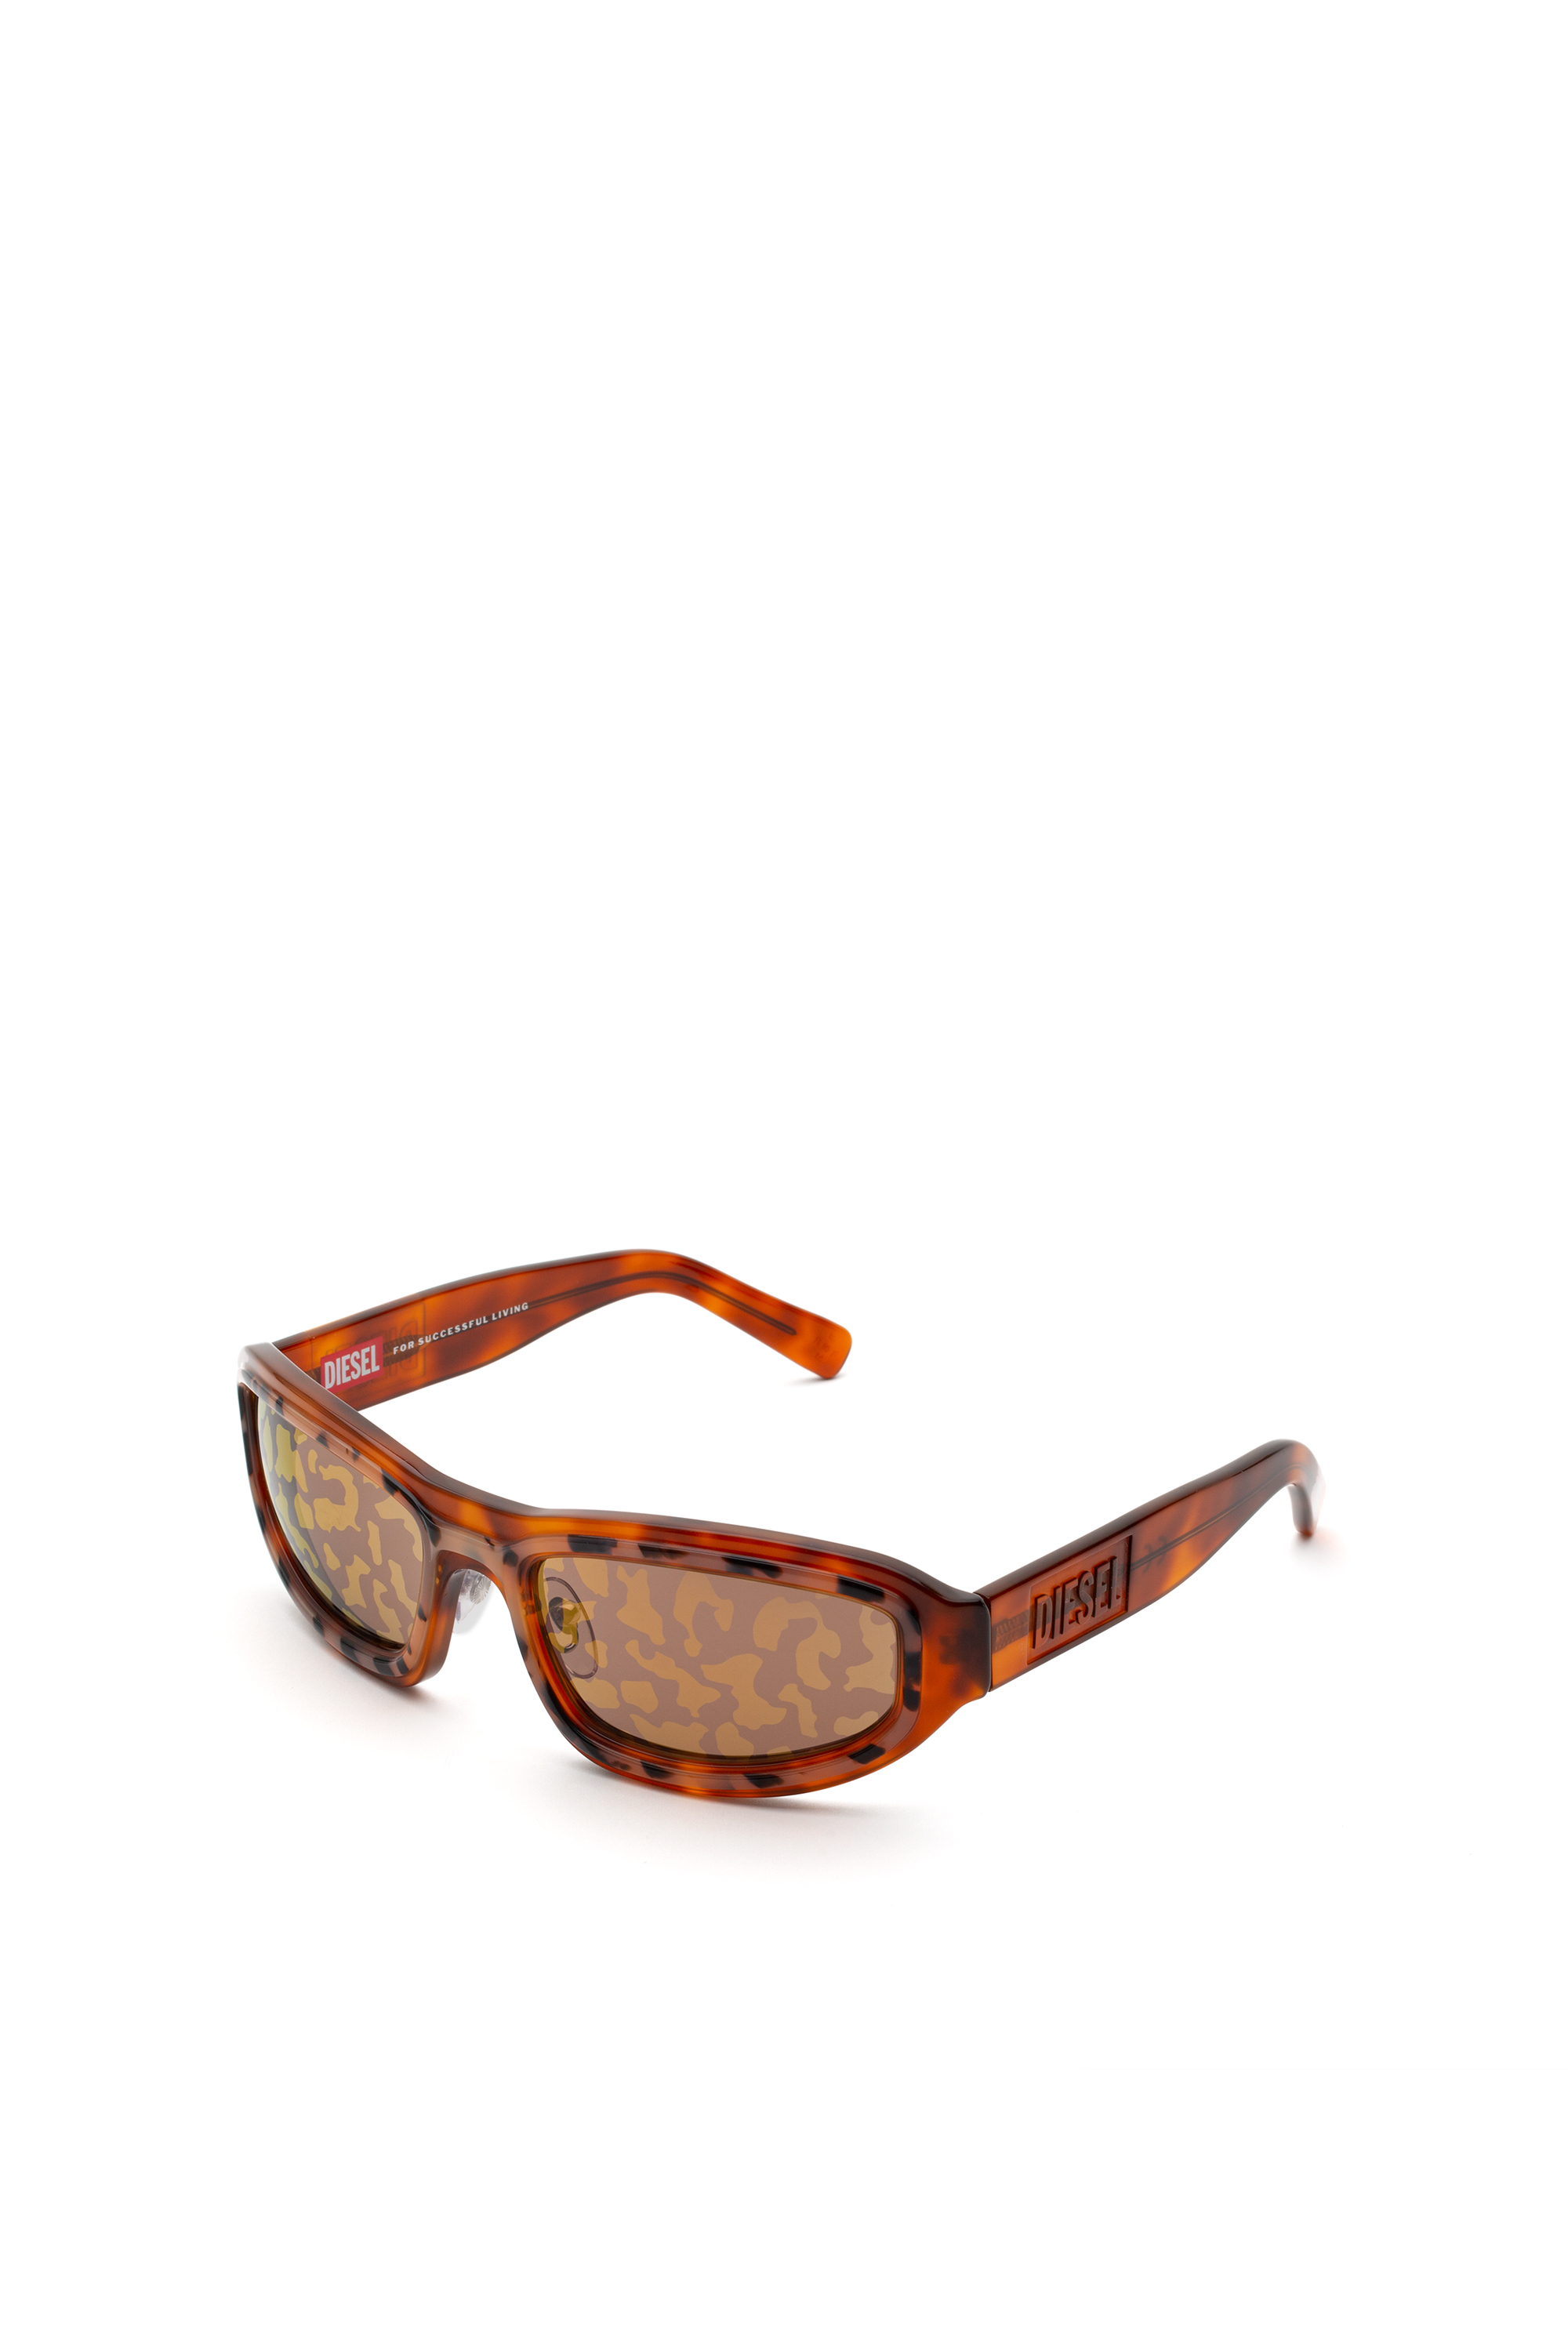 0,25 tot Diesel leesbril van 3,50 Ark blauw/ zwart mens dl5237 092 Accessoires Zonnebrillen & Eyewear Leesbrillen 